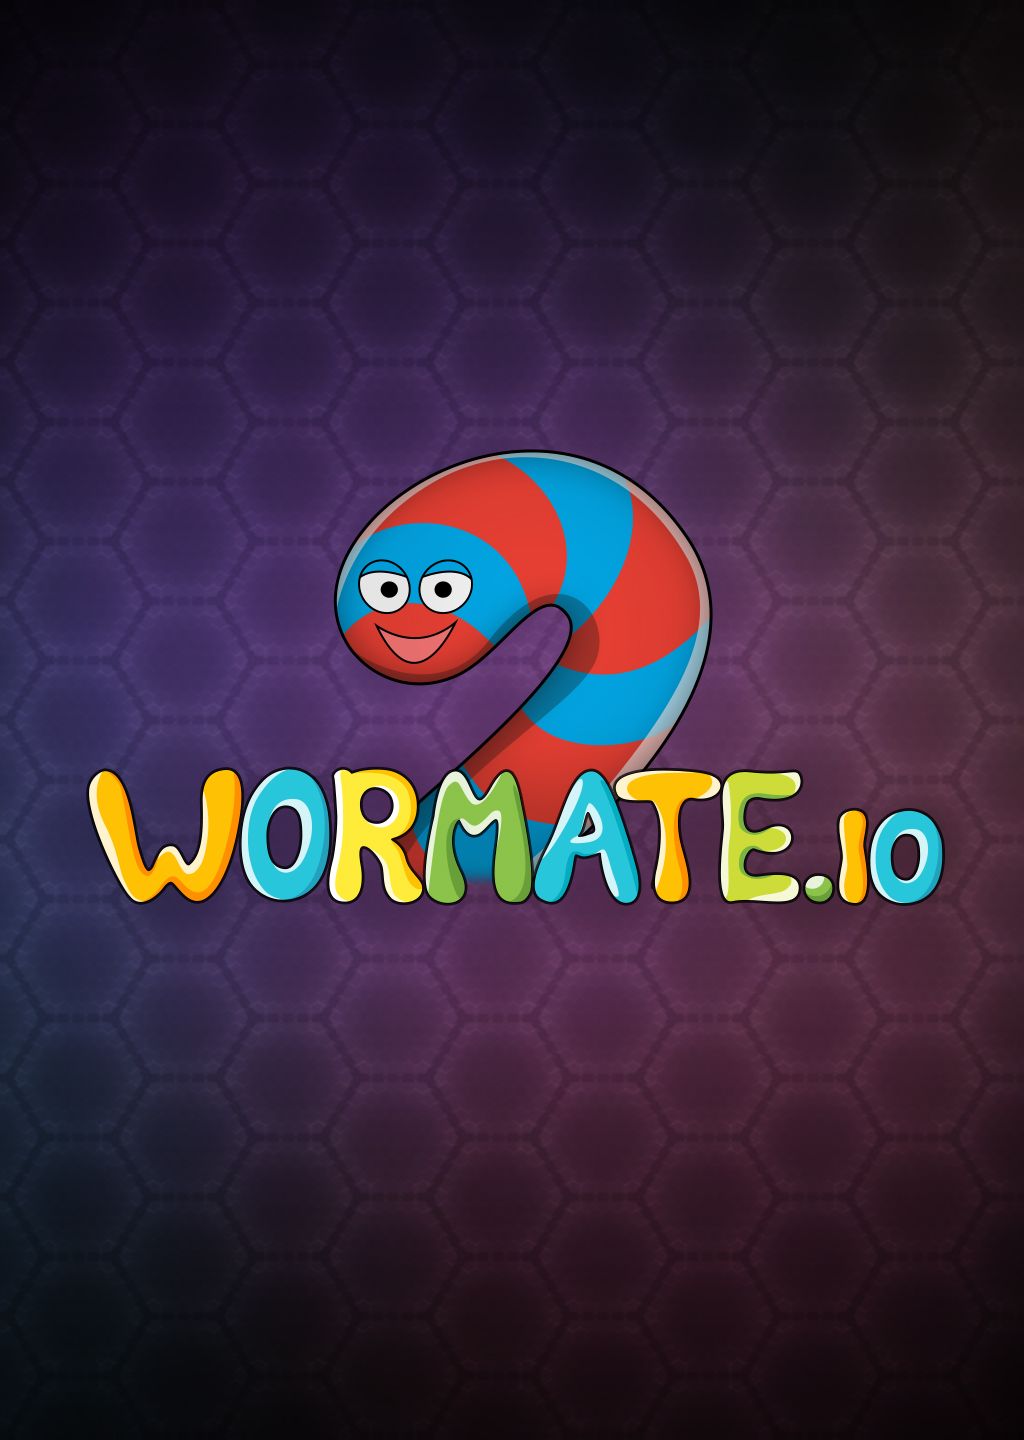 worm wormate io